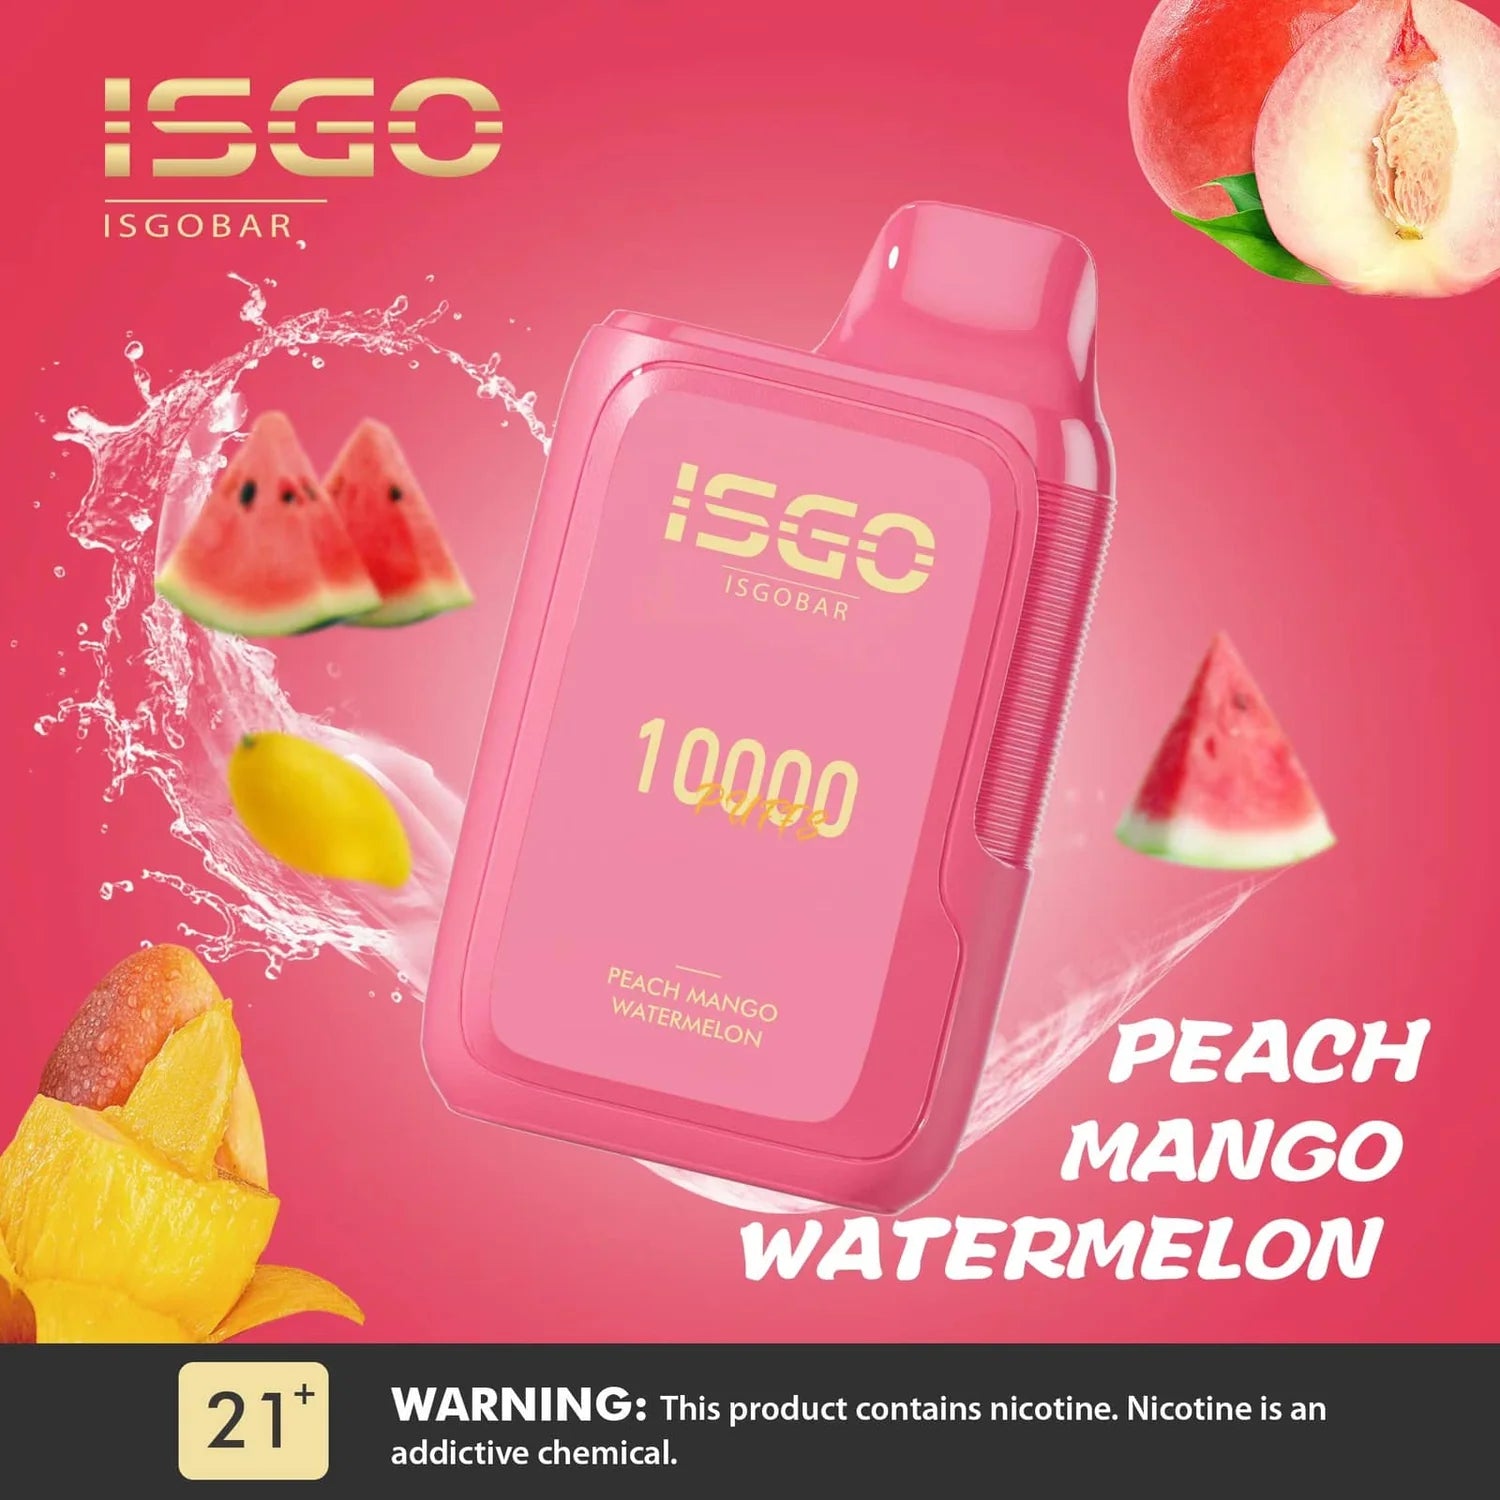 ISGO BAR 10000 - PEACH MANGO WATERMELON